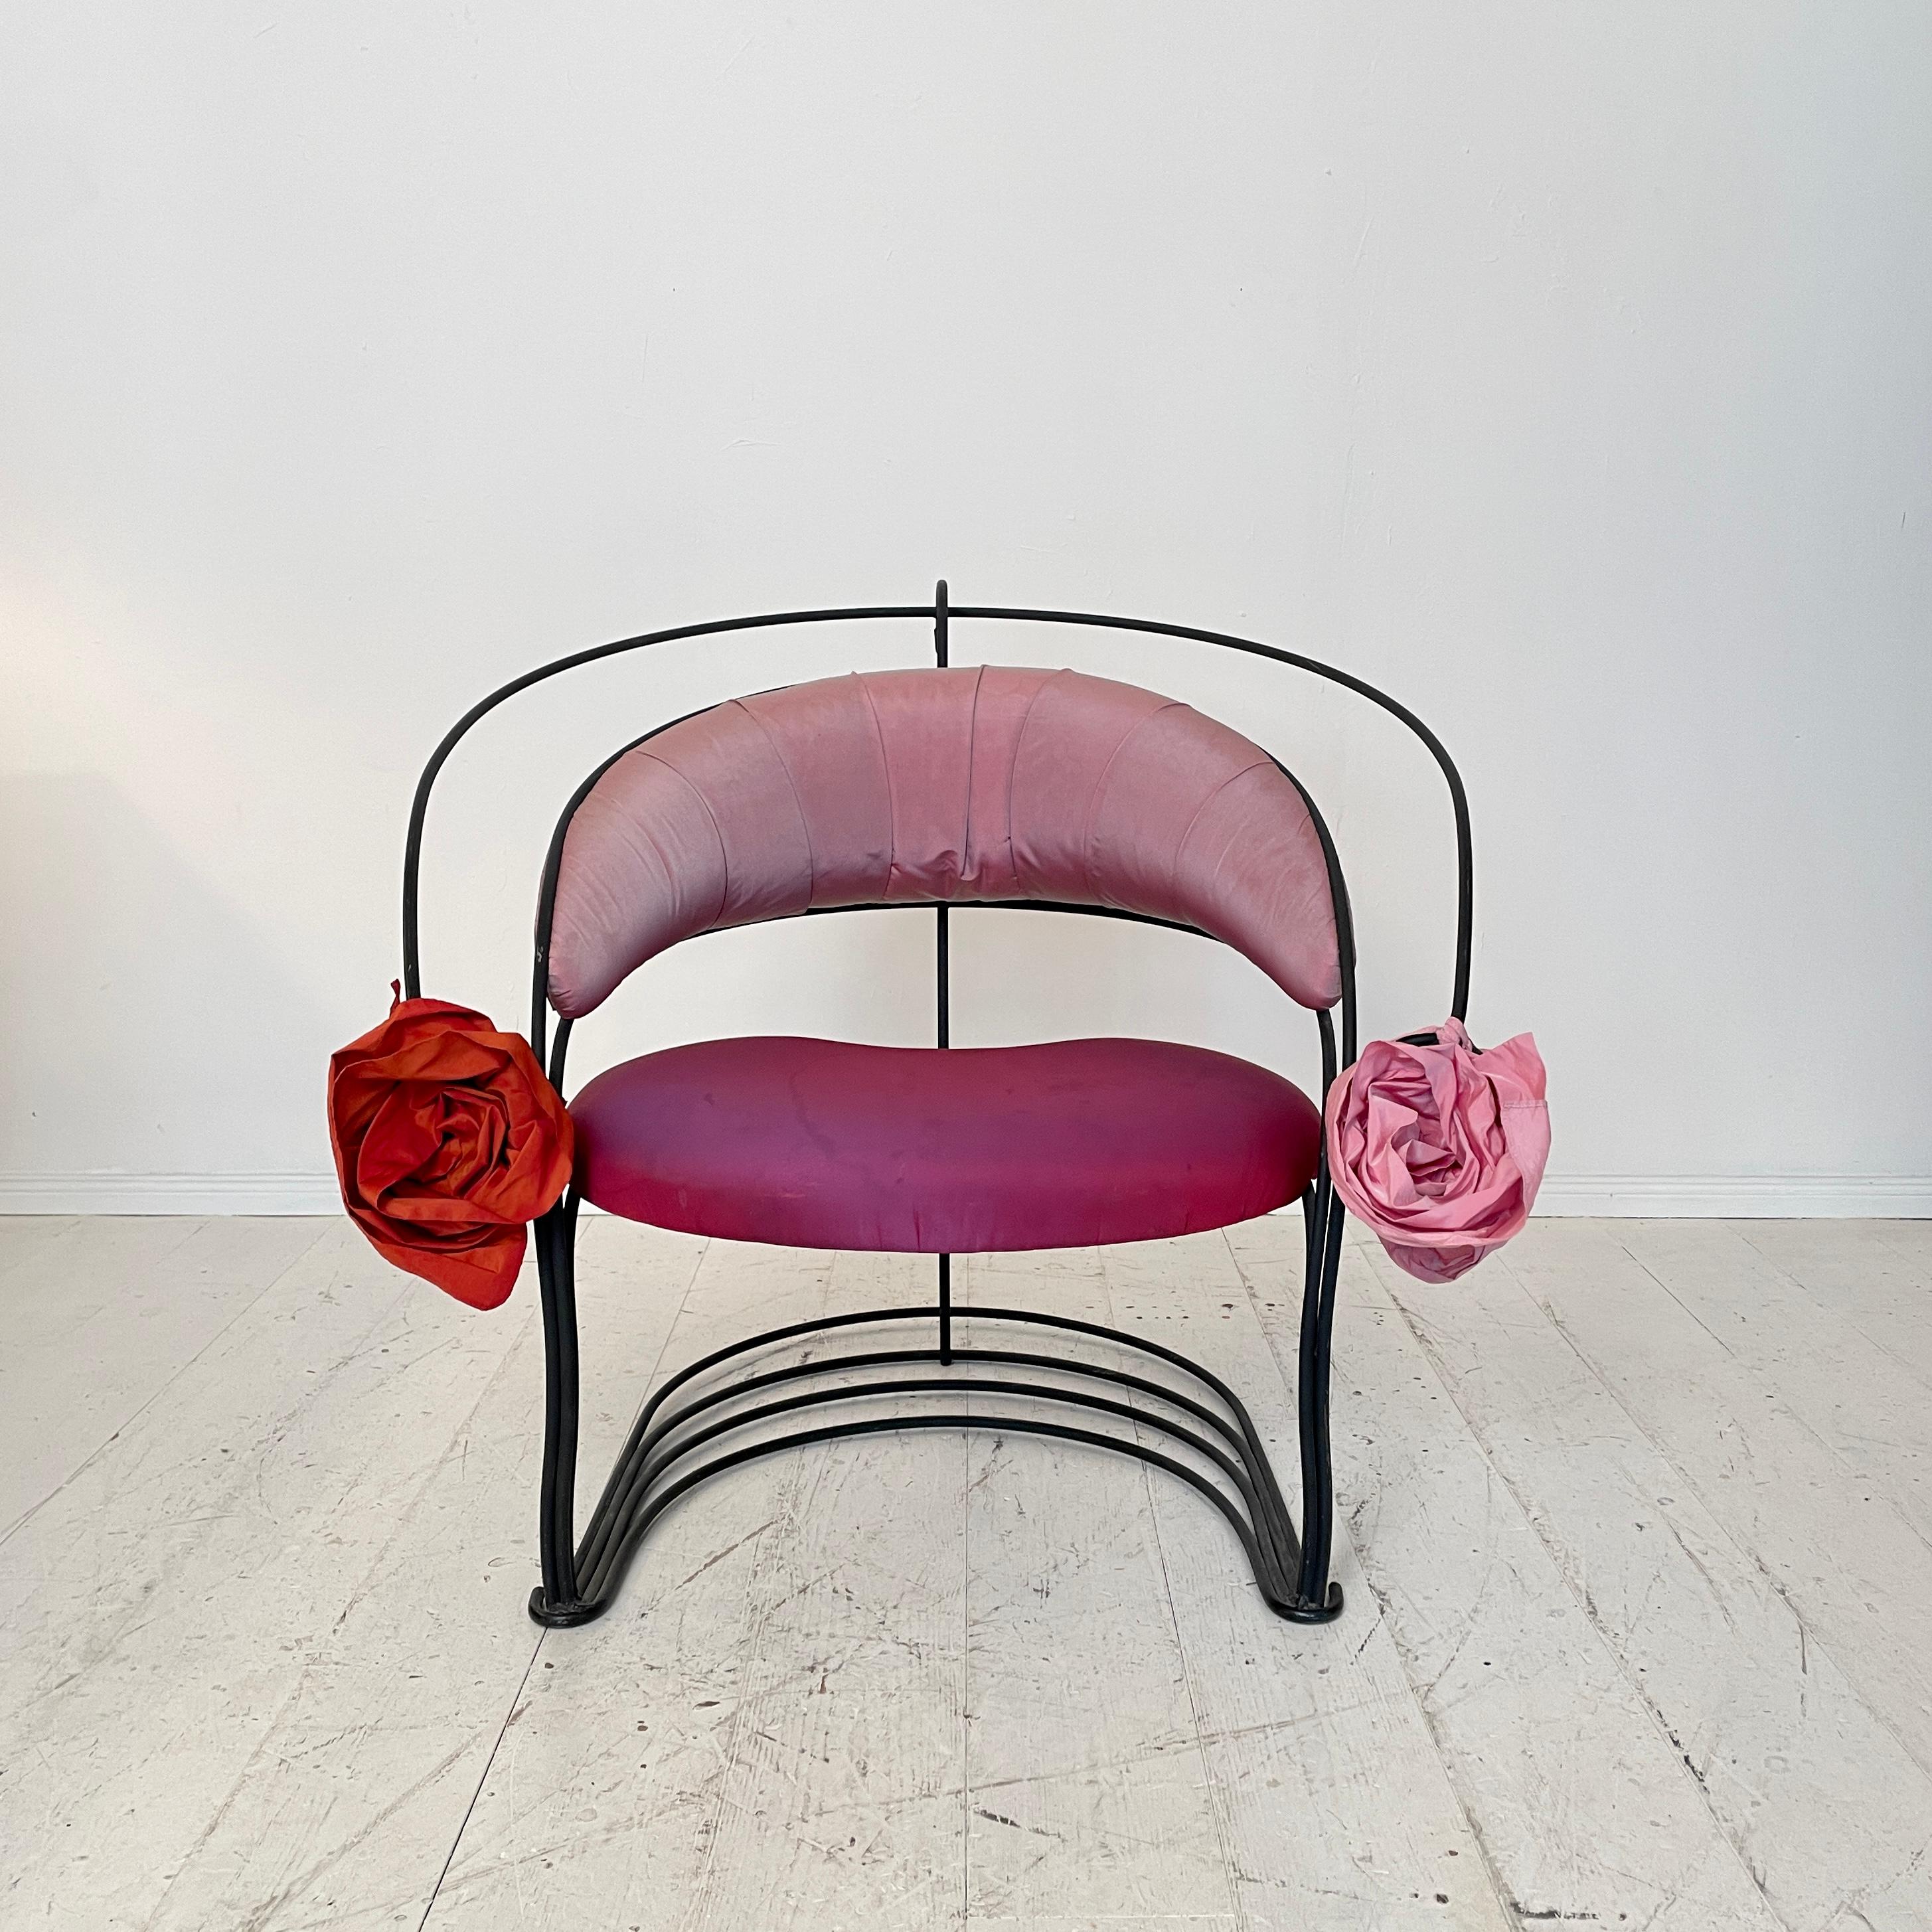 Ce fantastique fauteuil sculptural post-moderne italien a été fabriqué dans les années 1980.
Il est fabriqué en métal laqué noir et possède une tapisserie en soie rose et rouge.
Au bout de l'accoudoir, il y a de grandes fleurs en soie.
Un meuble